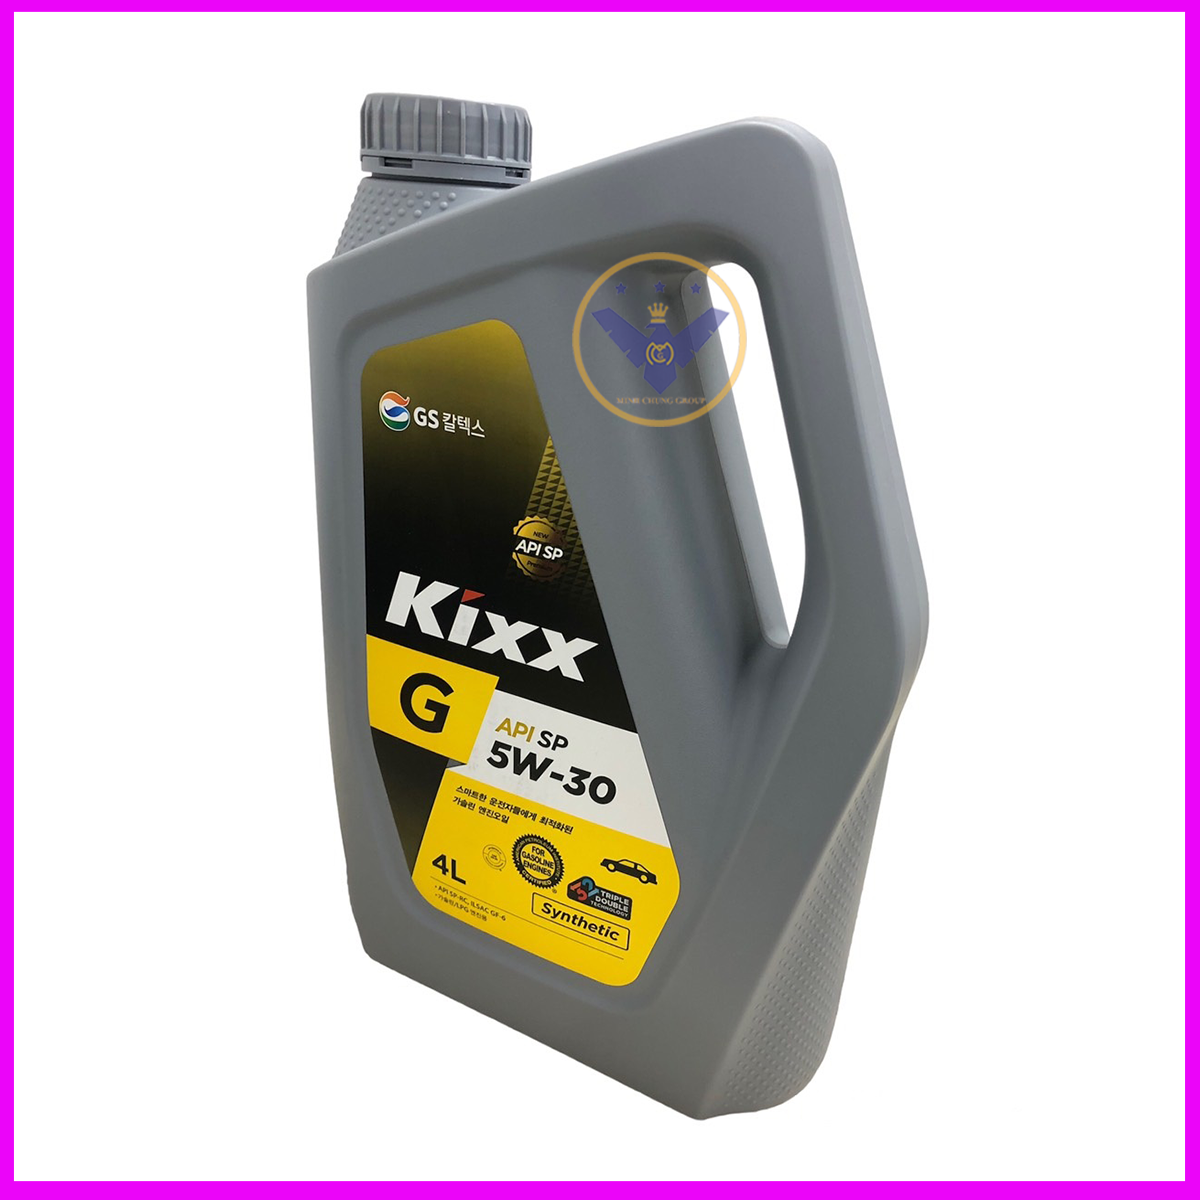 Dầu nhớt ô tô tổng hợp Kixx G API SP 5W30 Hàn Quốc can 4L + Súc rửa động cơ Bluechem 250ml